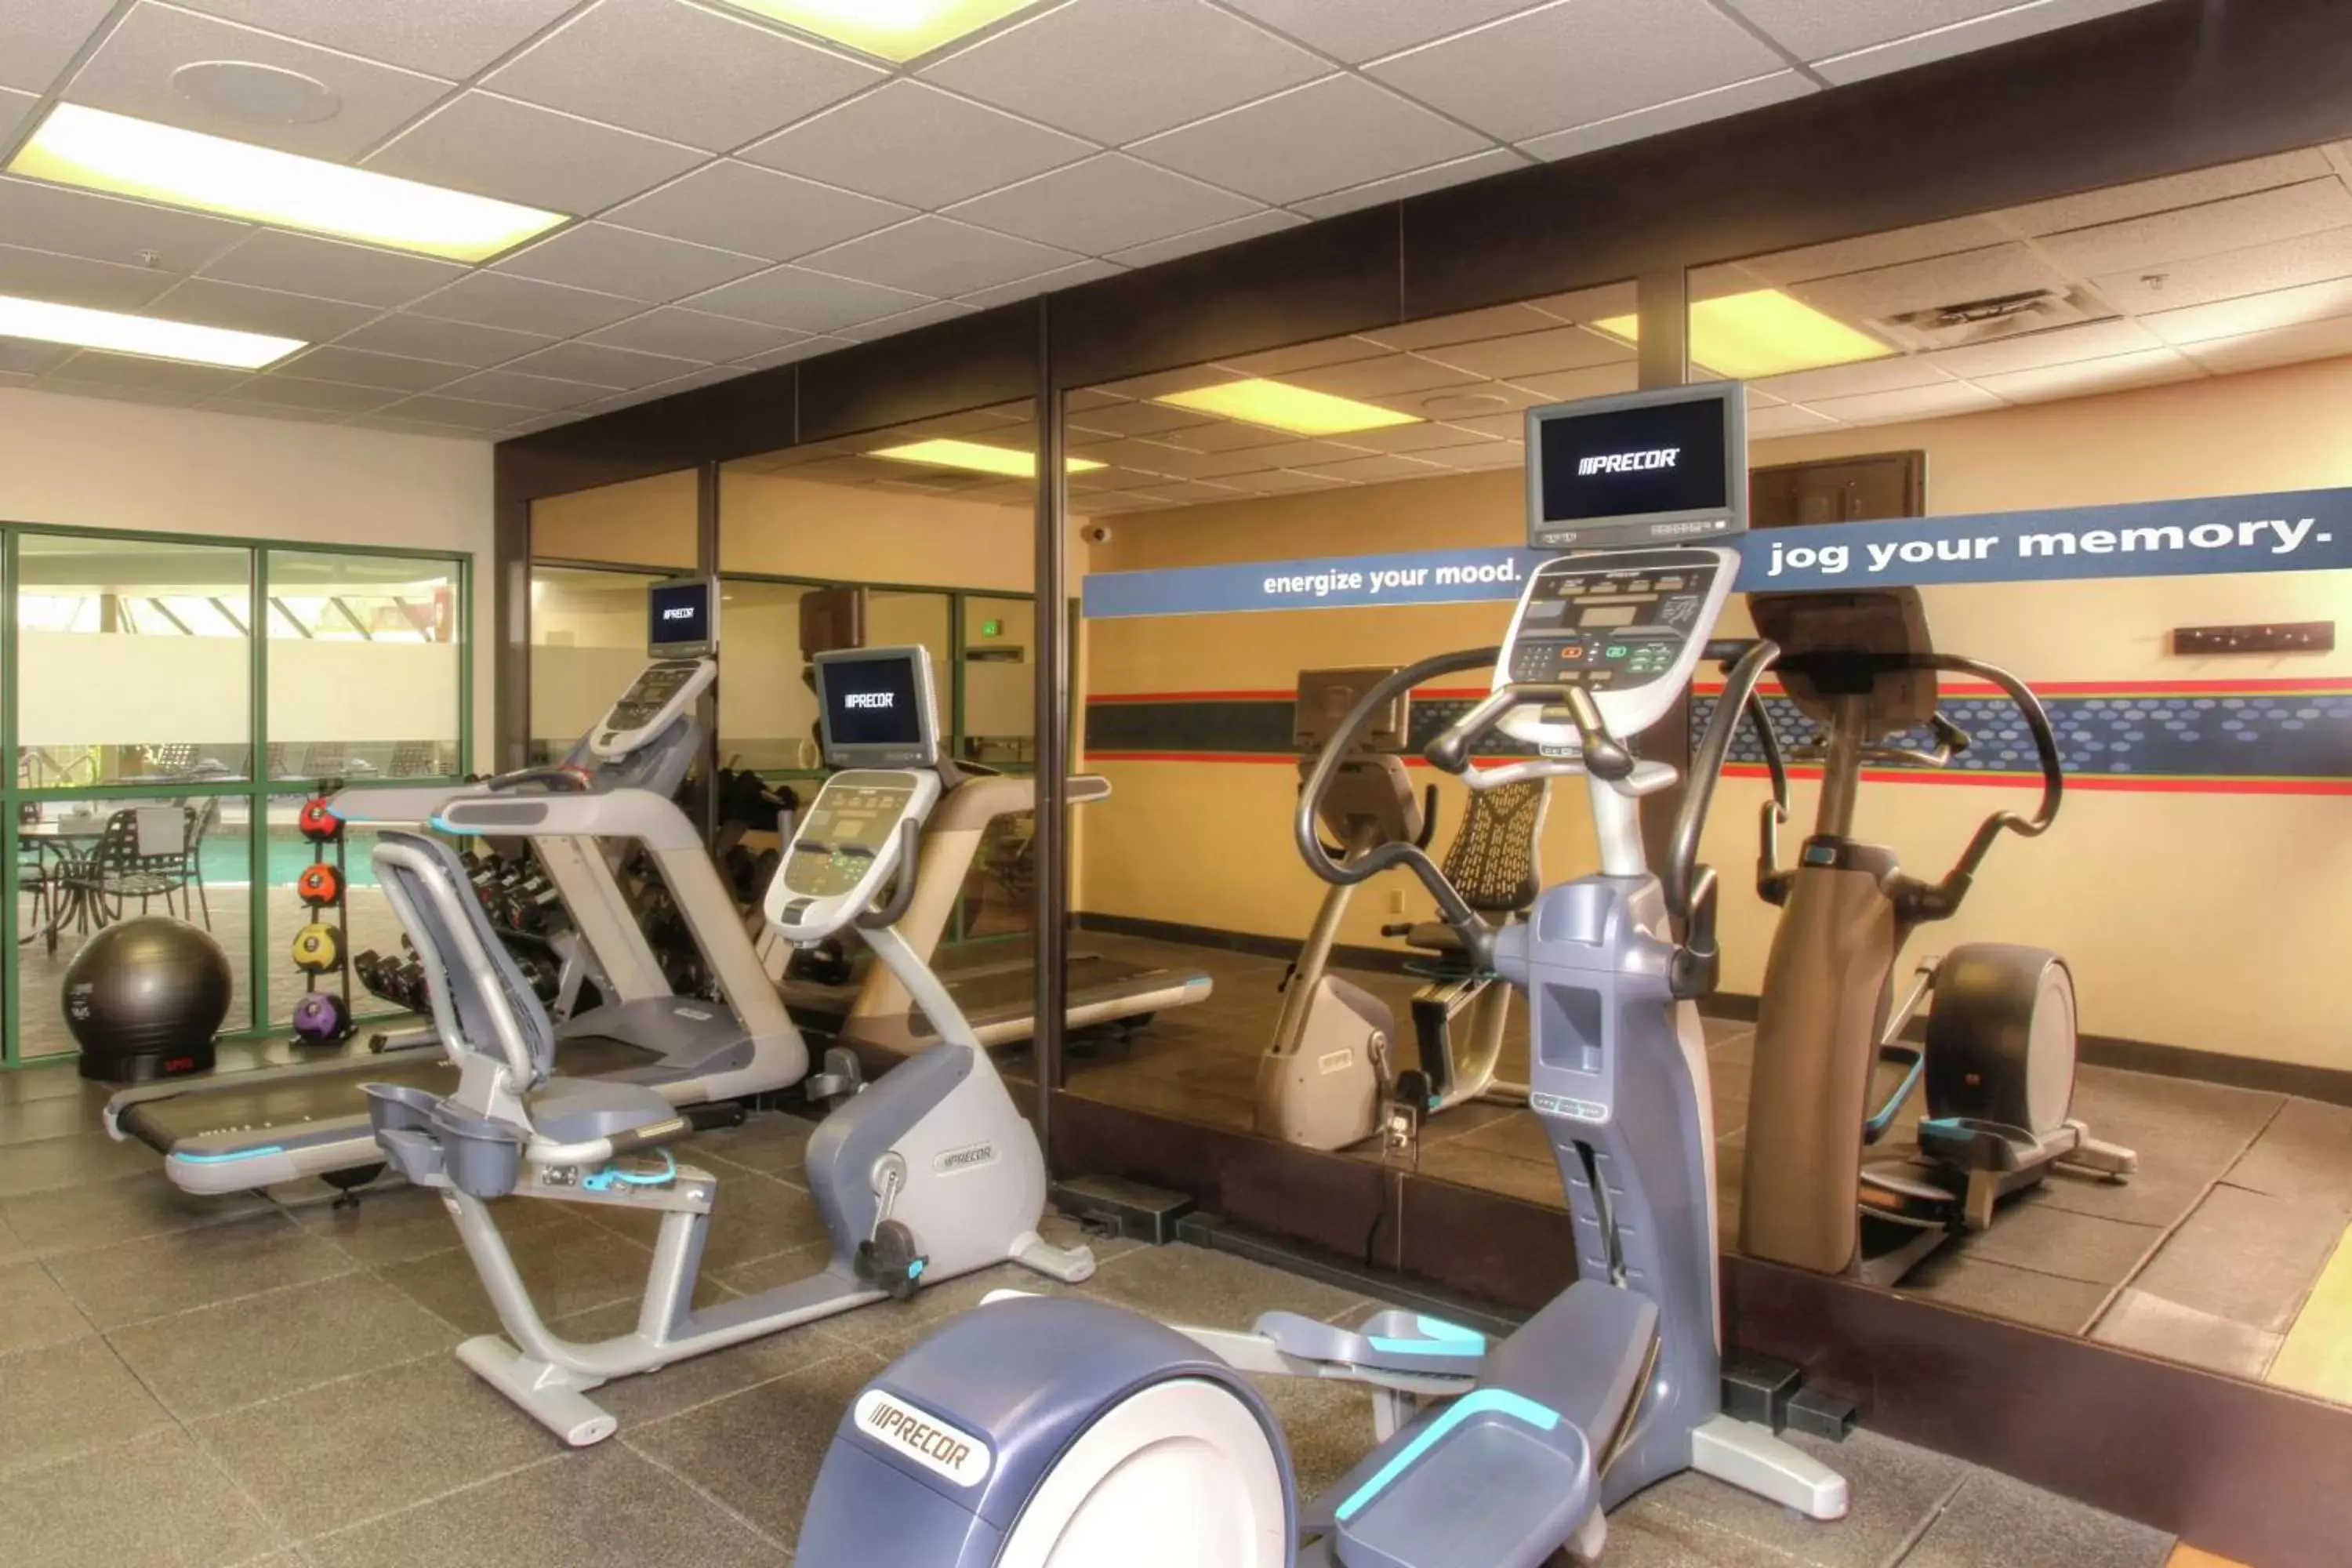 Fitness centre/facilities, Fitness Center/Facilities in Hampton Inn Kalispell